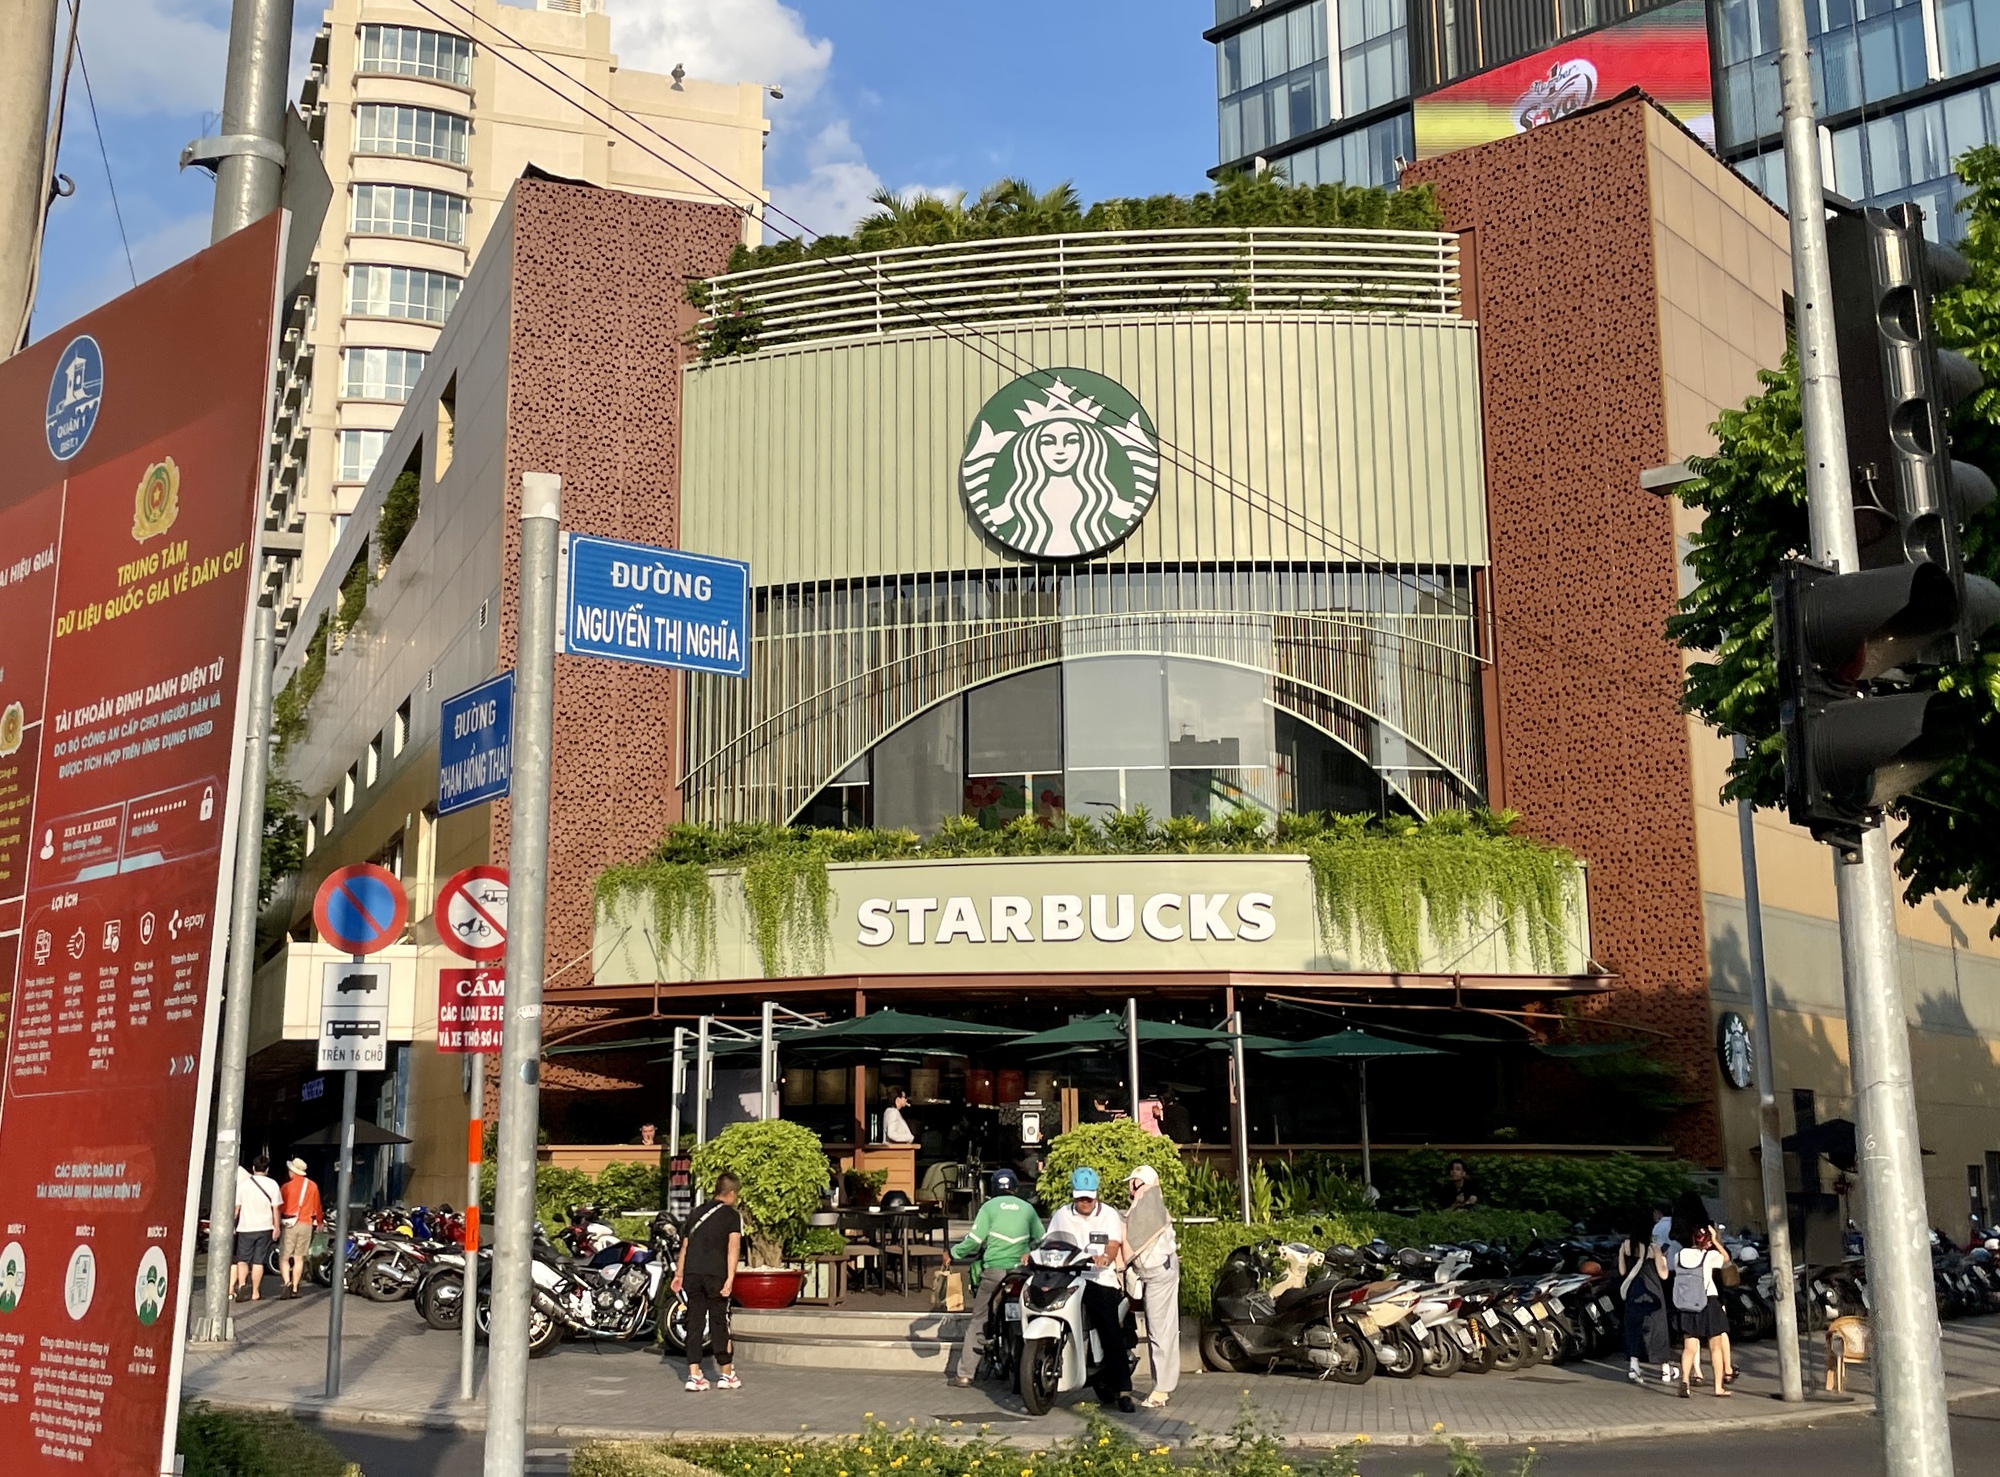 Starbucks âm thầm mở một loạt cửa hàng mới, đấu với Highlands, The Coffee House... - Ảnh 2.